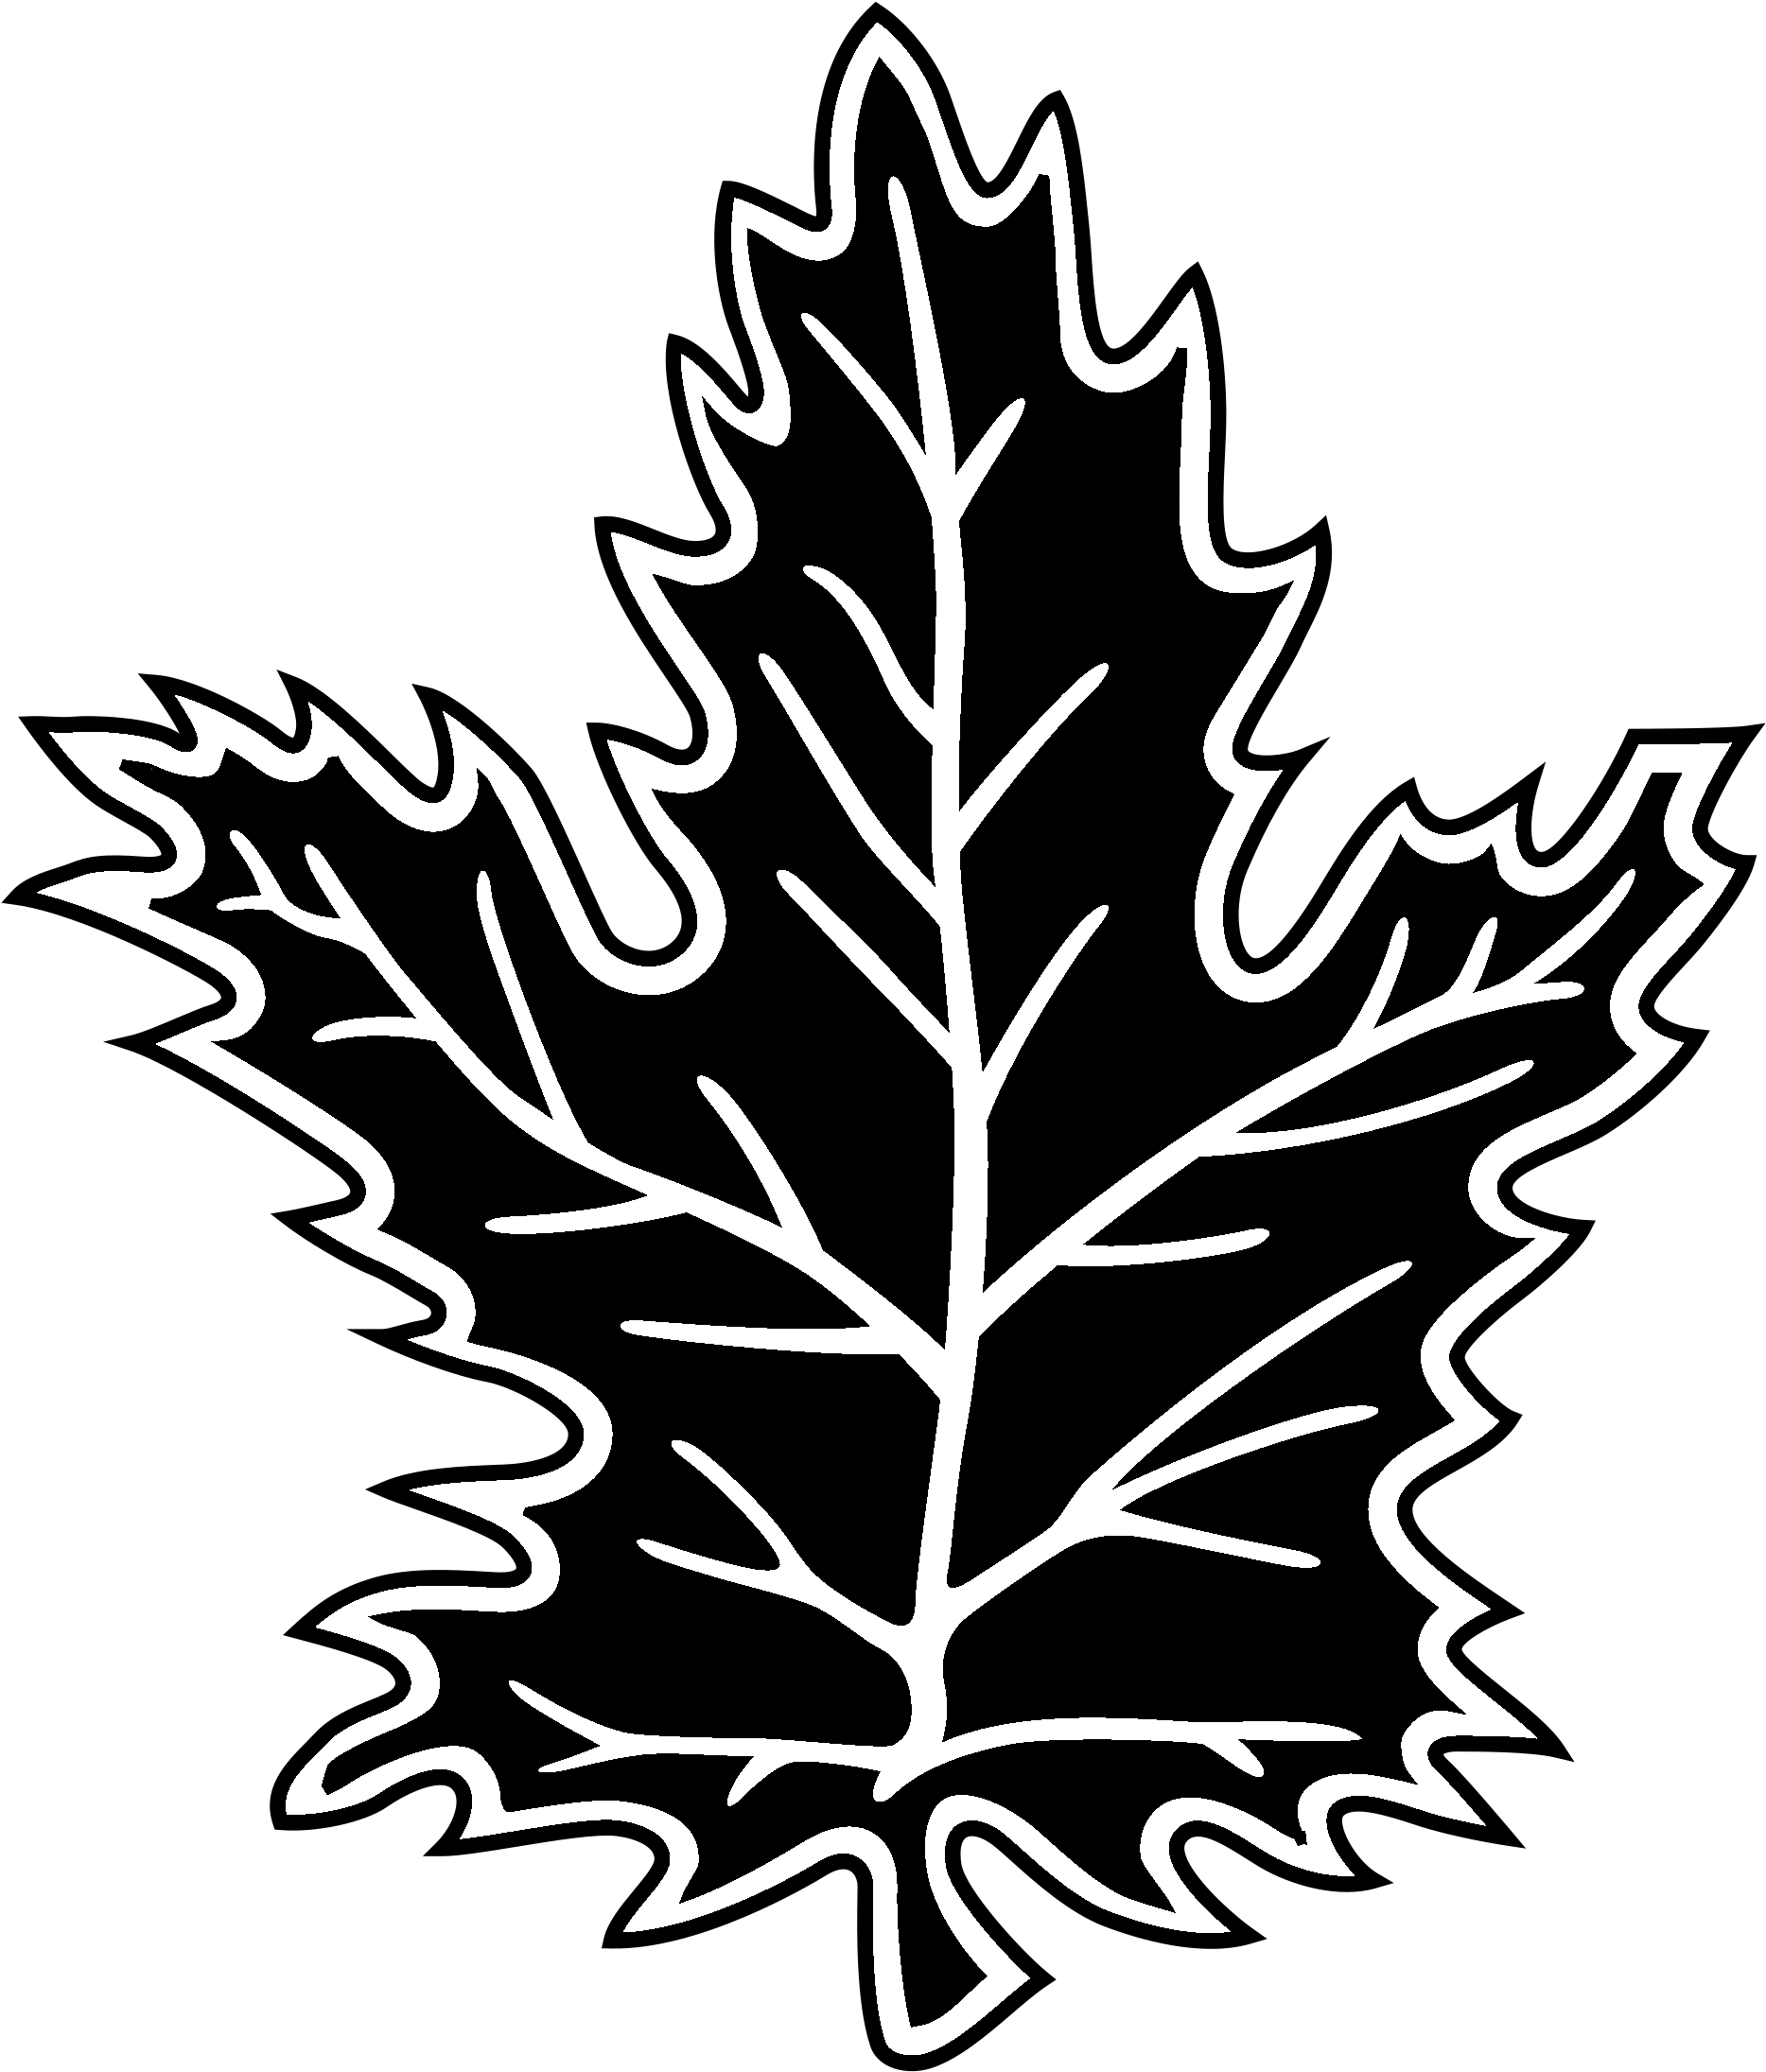 Toronto Maple Leafs Logo Black And White - Toronto Maple Leafs (2400x2400)